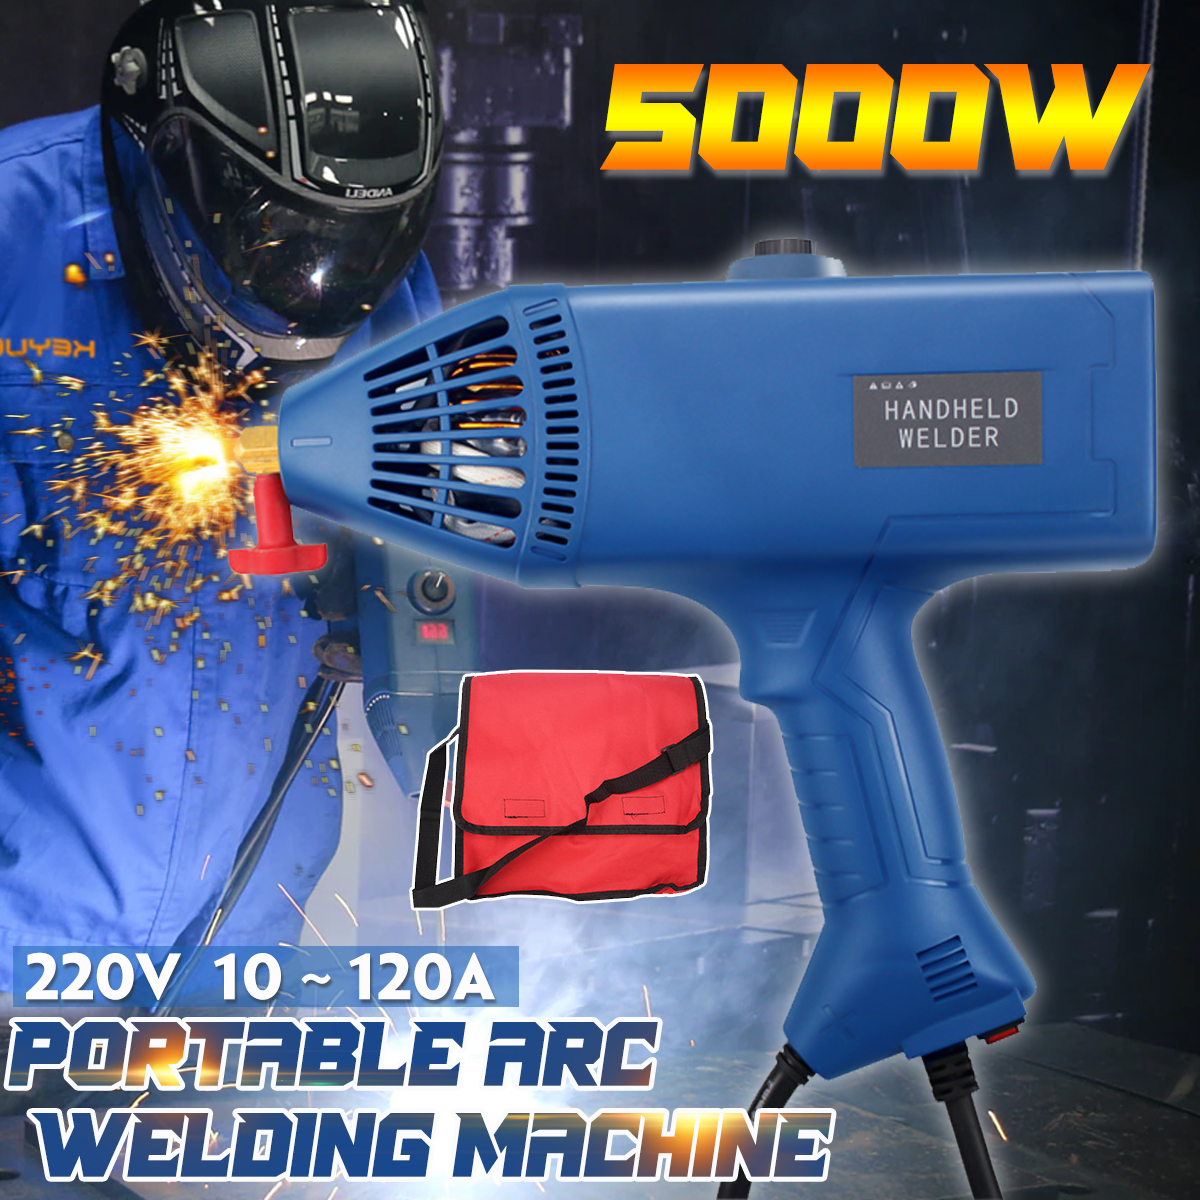 220V-5000W-Handheld-Portable-Welding-Torch-Machine-214mm-Welder-Thickness-1891680-1